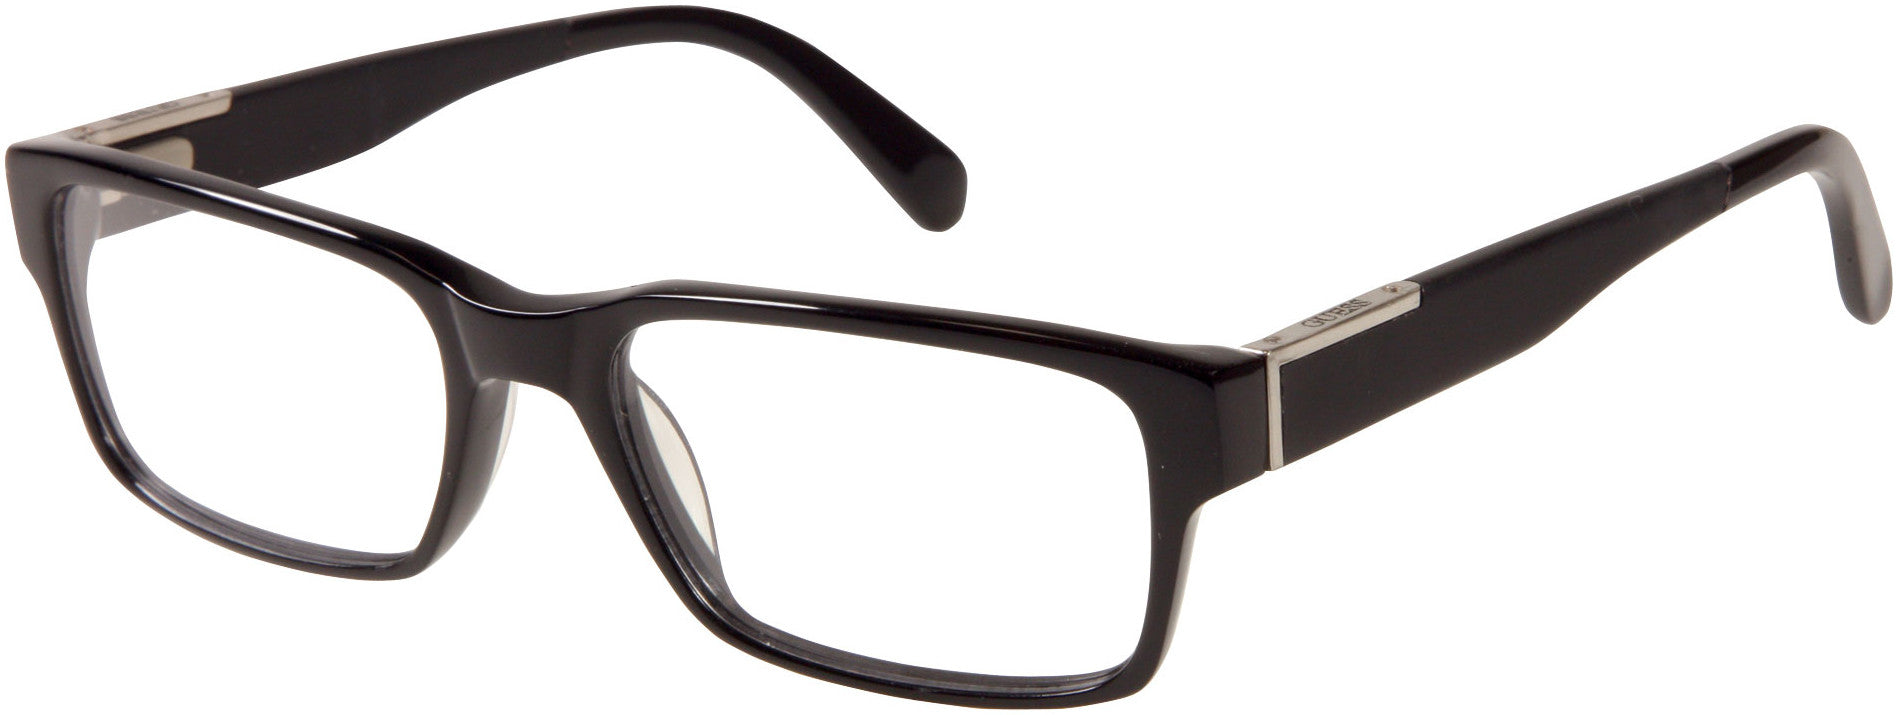 Guess GU1775 Eyeglasses B84-B84 - Black